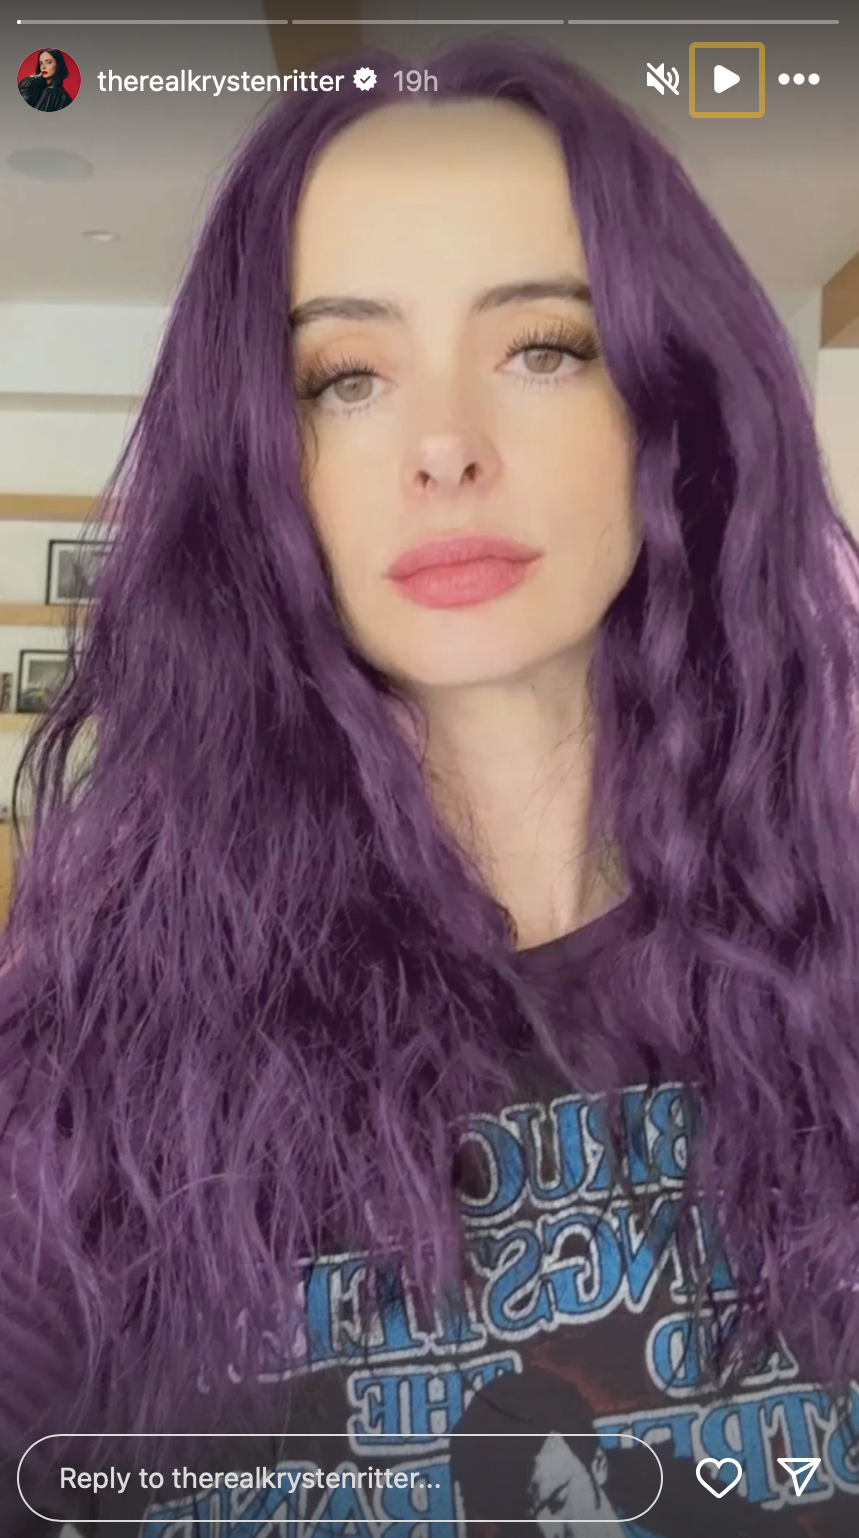 Krysten Ritter with purple hair on Instagram story